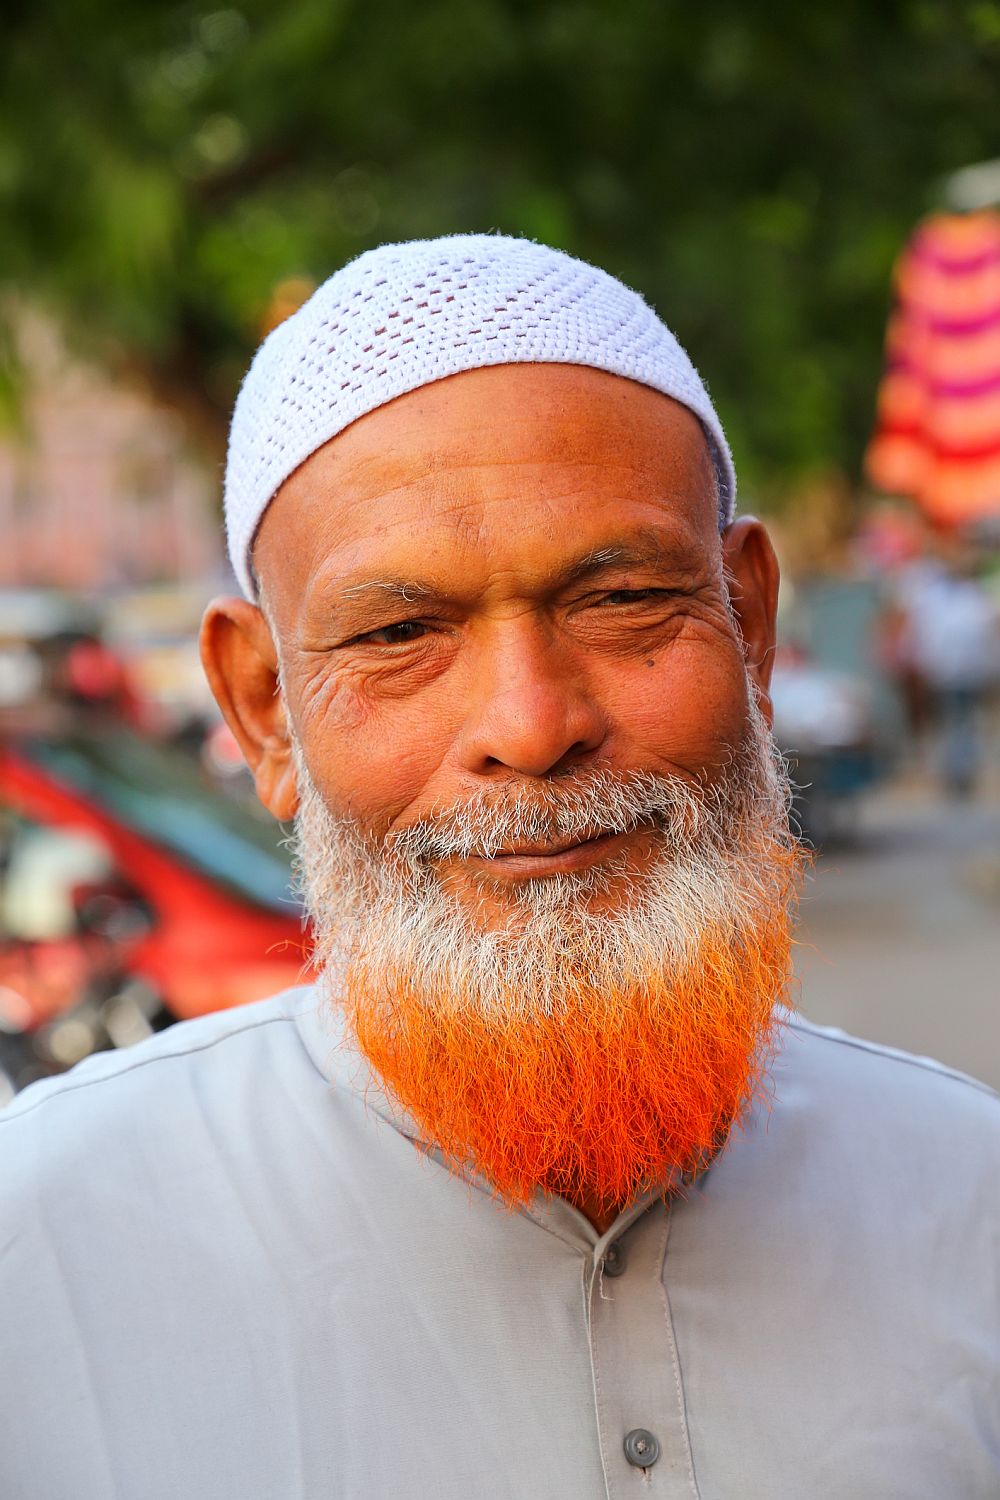 Beard dye for men